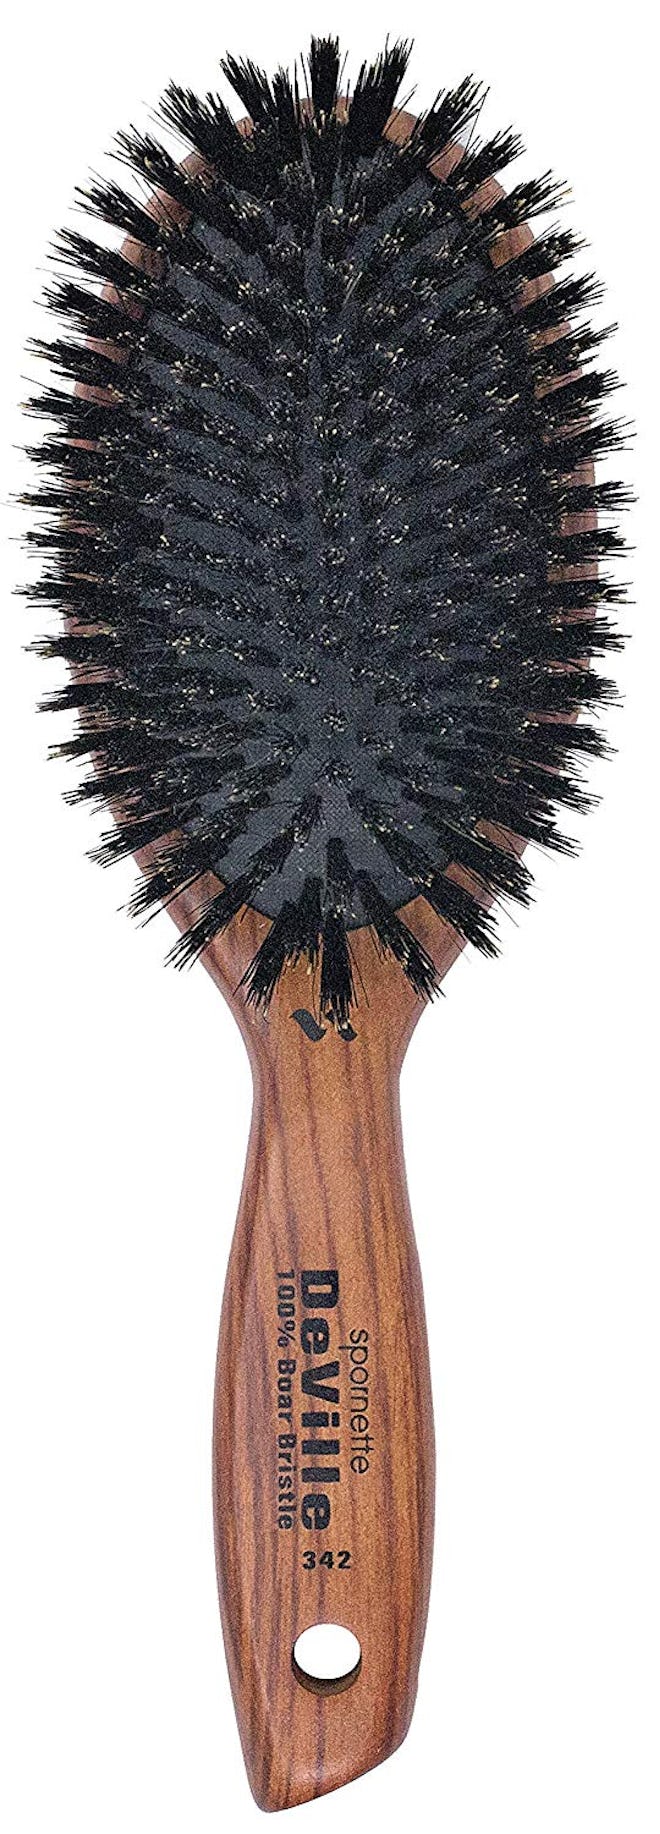 Spornette Boar Bristle Hair Brush